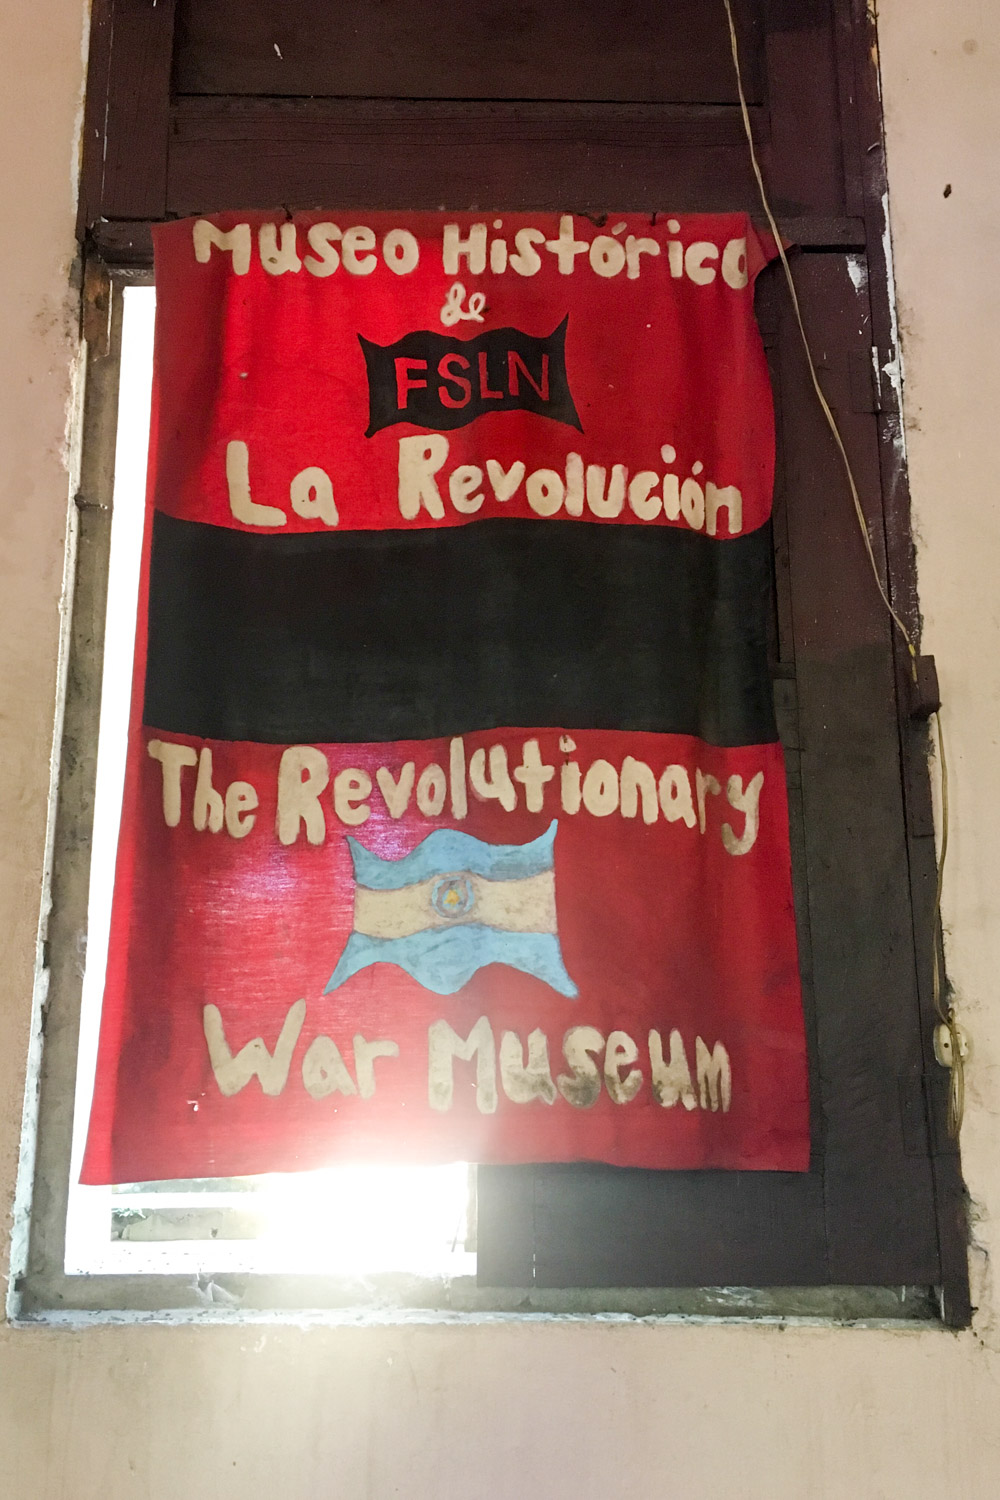 Museo Historicos de La Revolución